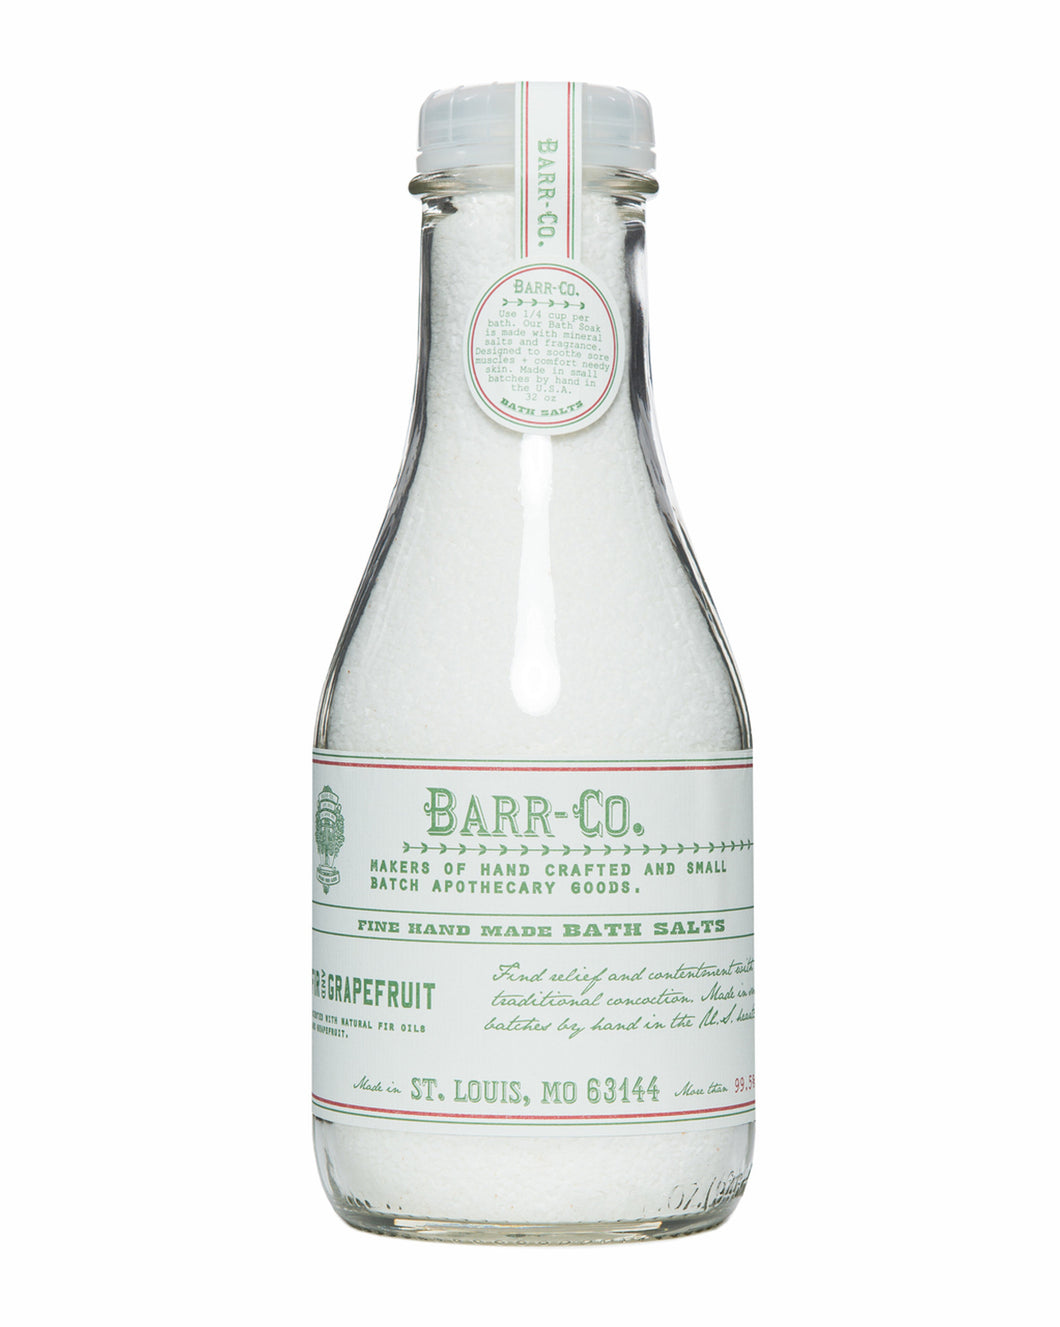 Barr-Co. Fir & Grapefruit Bath Soak